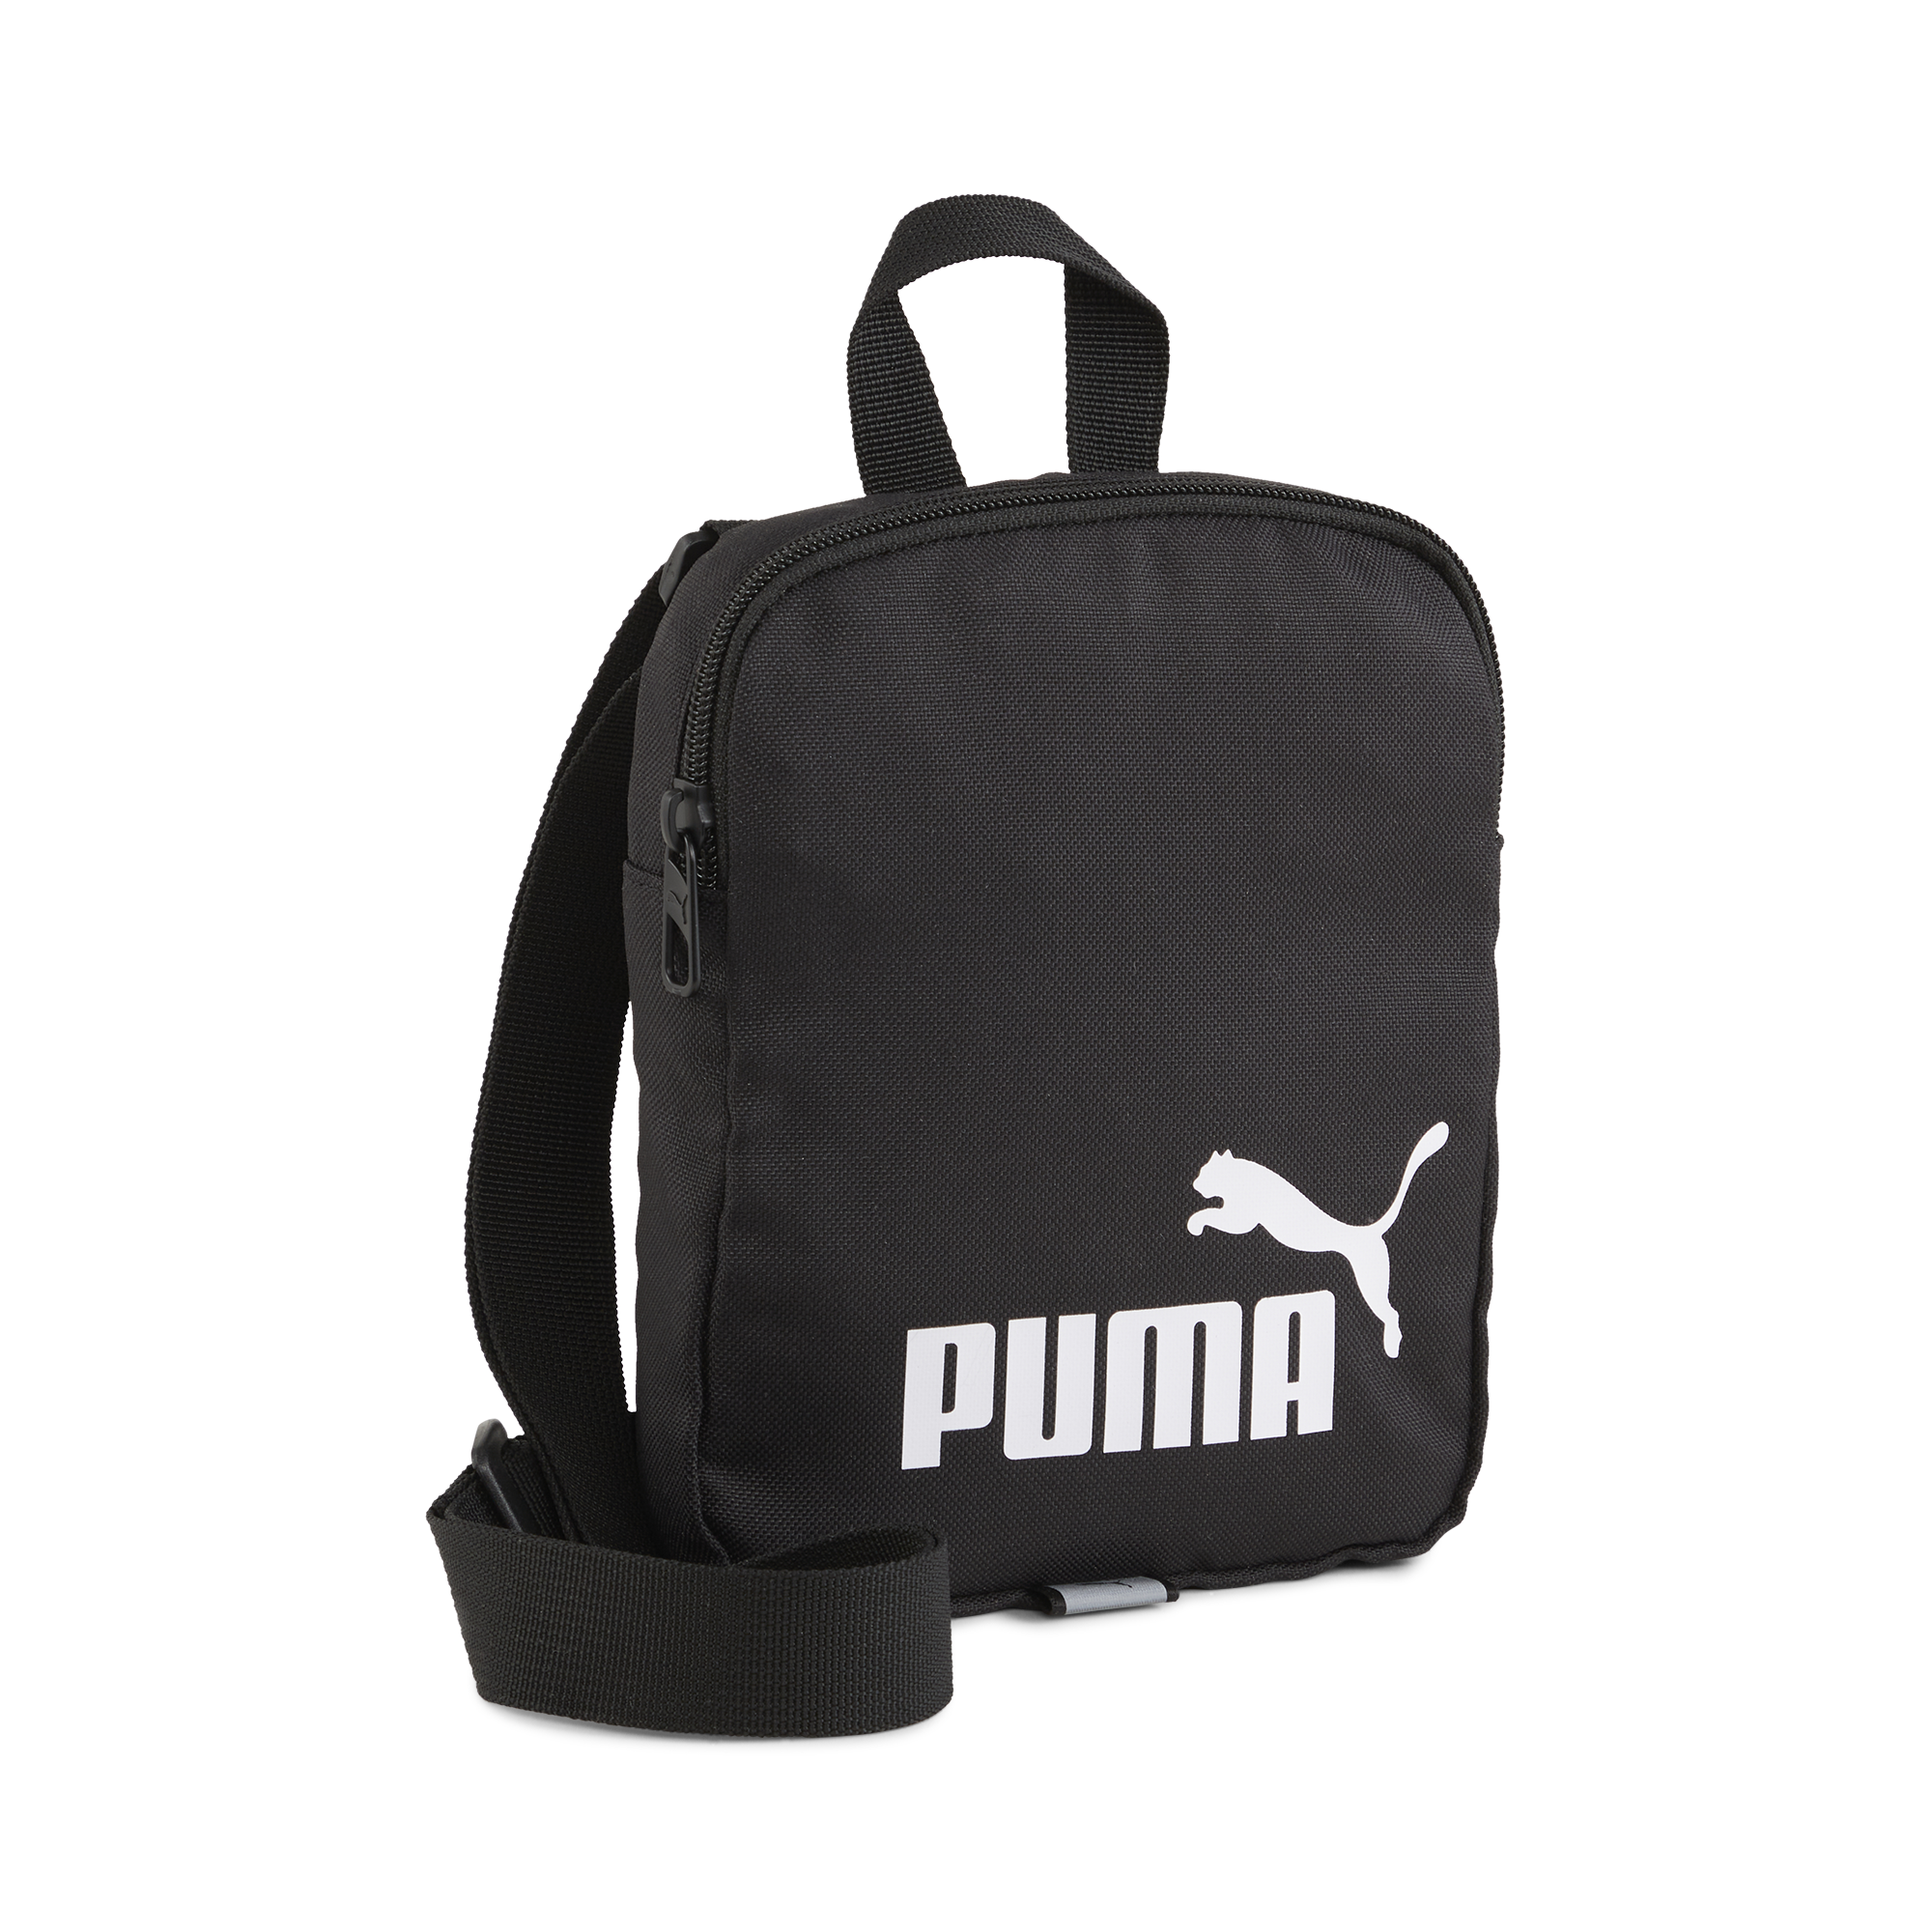 PUMA Phase Portable OSFA / Puma Black